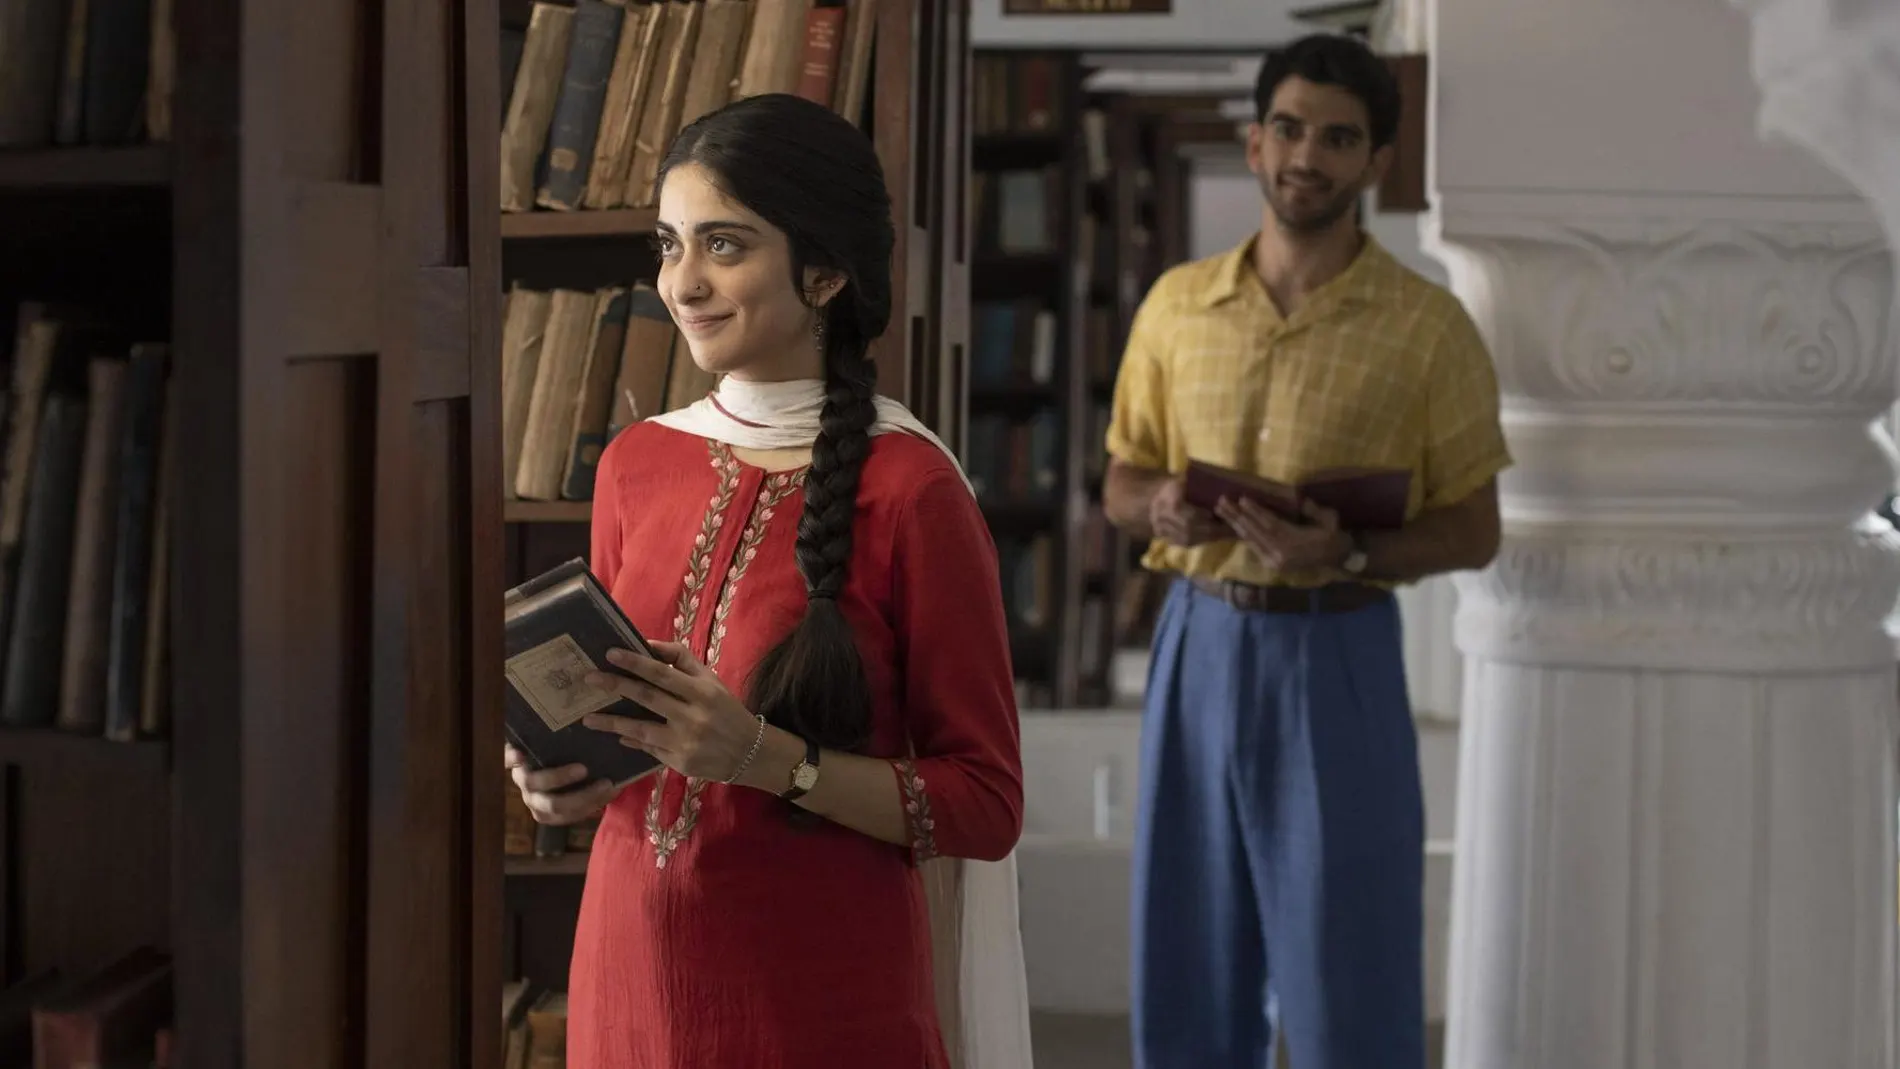 En "A suitable boy", una joven hindú escapa de su matrimonio concertado para conocer a un estudiante musulmán